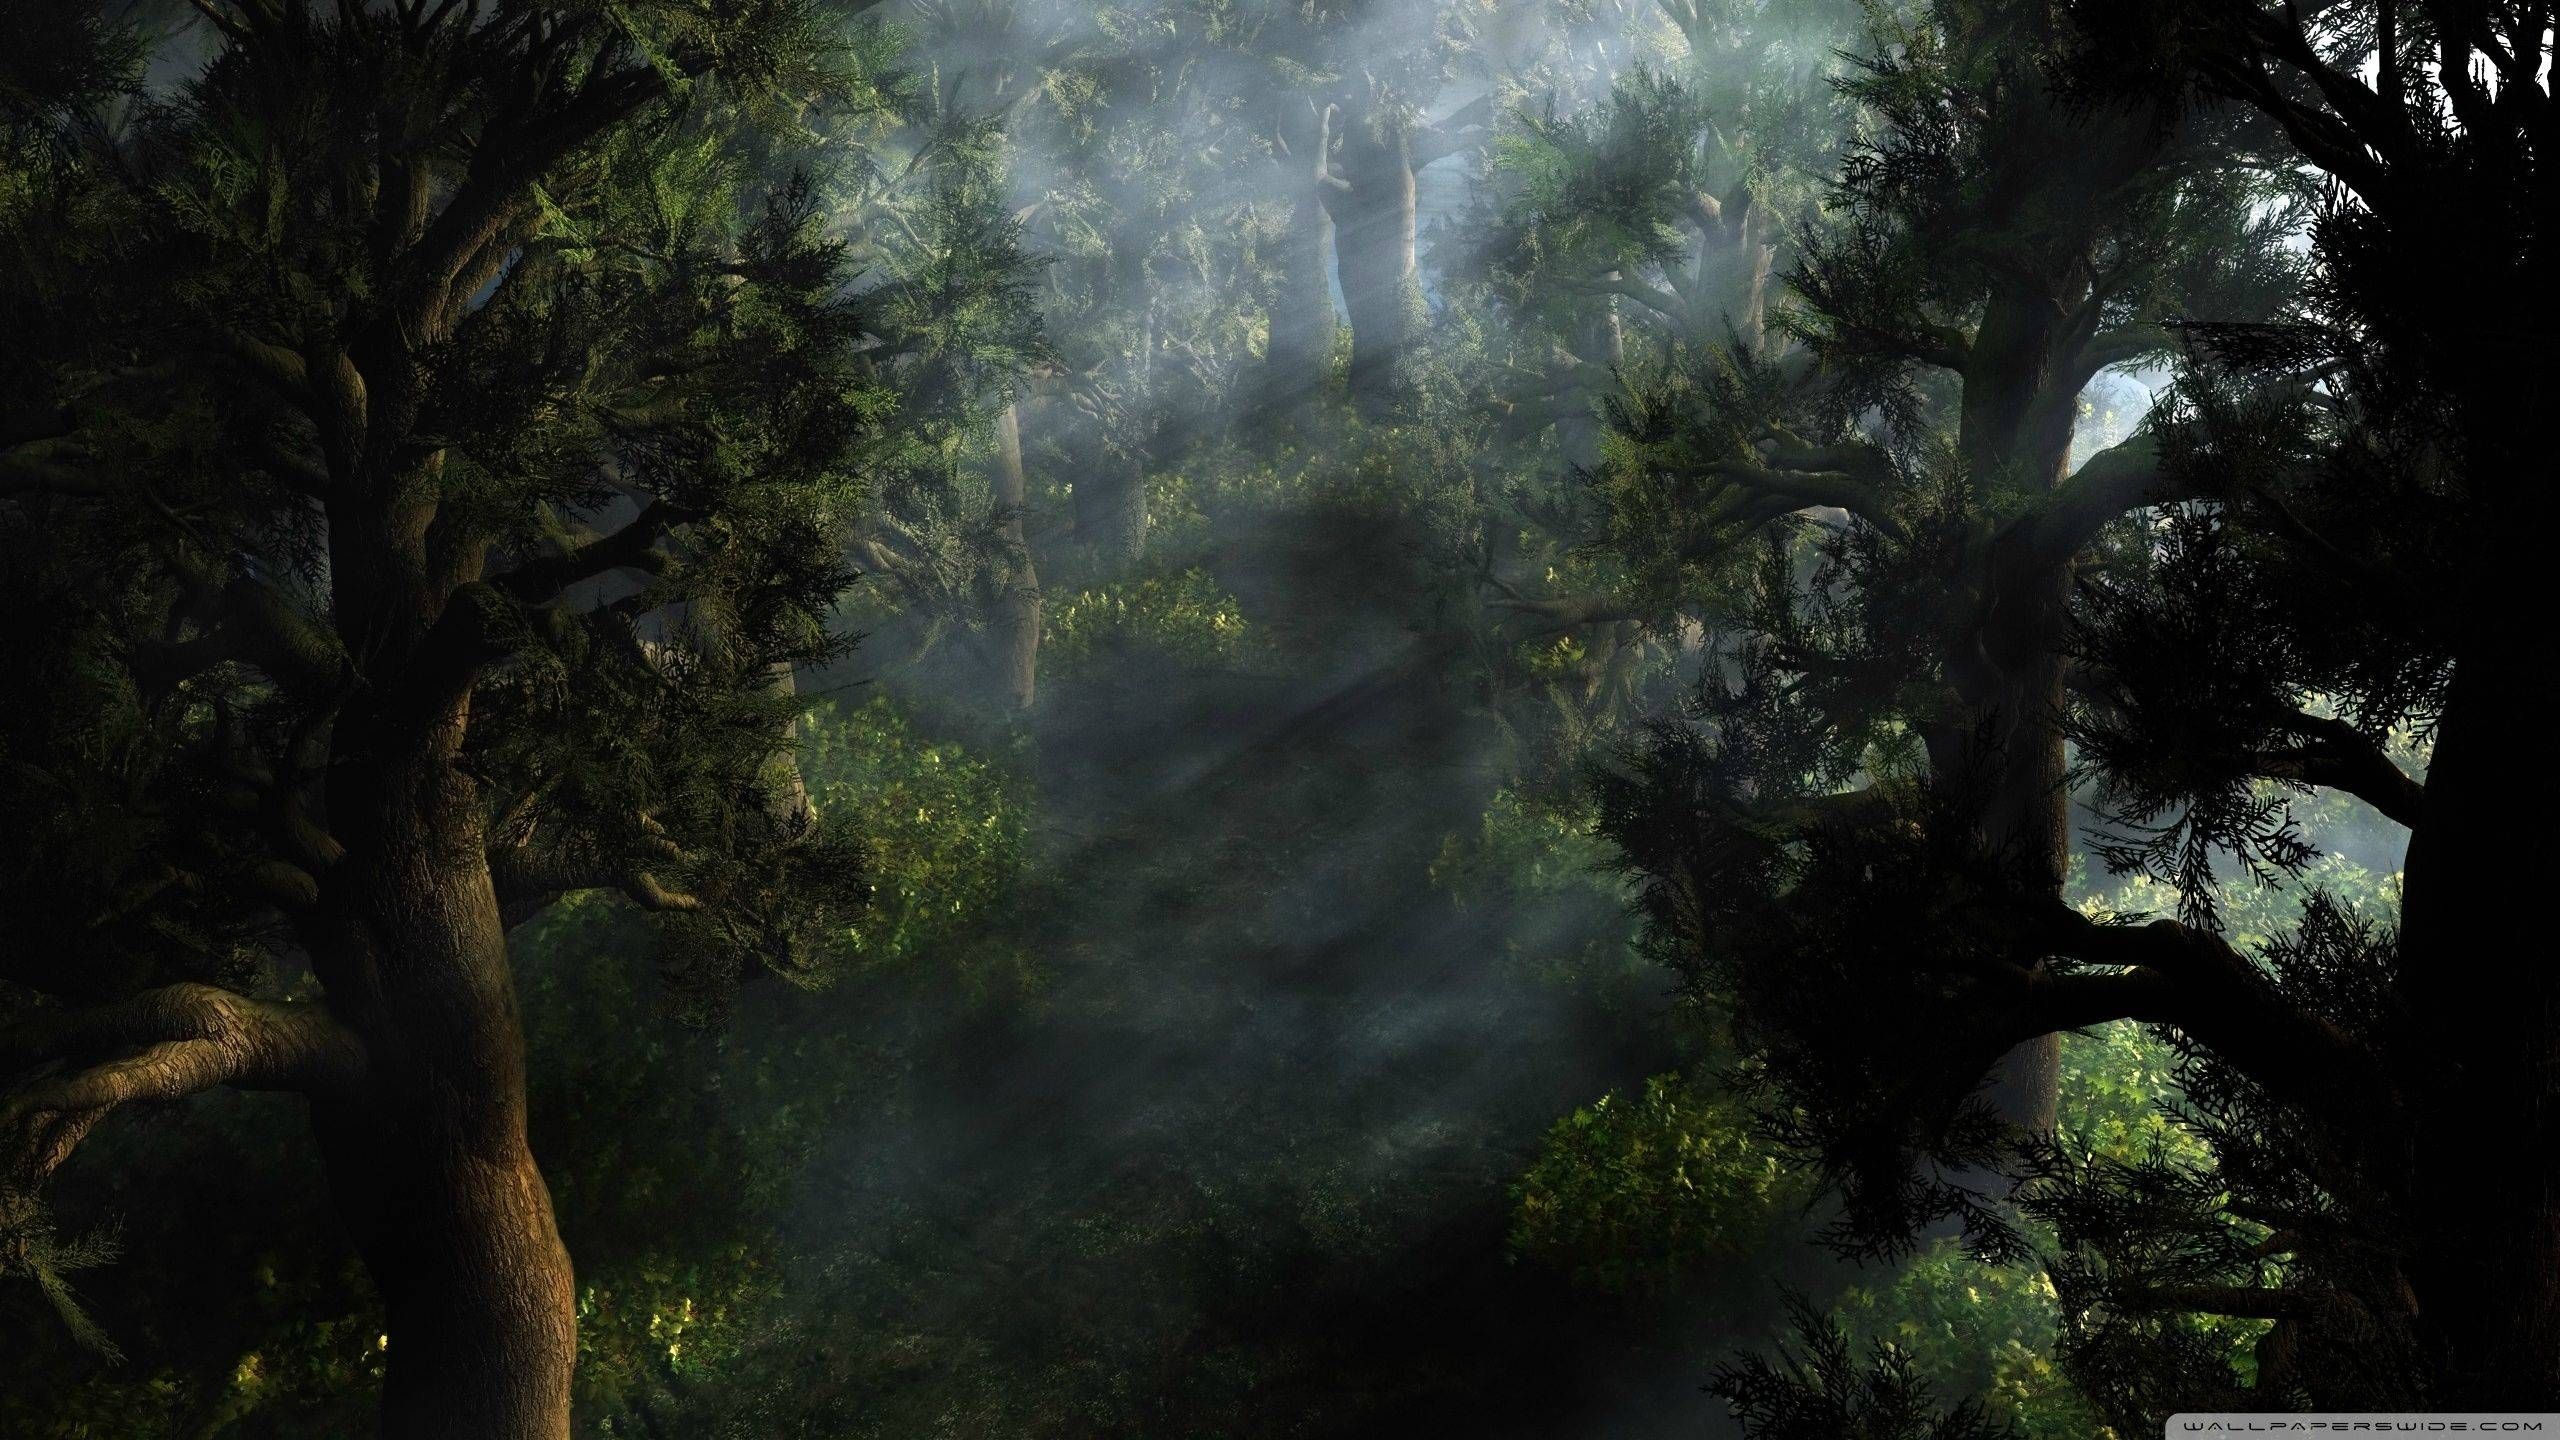 Mystical forest wallpaper. Desktop Background for Free HD Wallpaper. Mystical forest, Forest wallpaper, Nature desktop